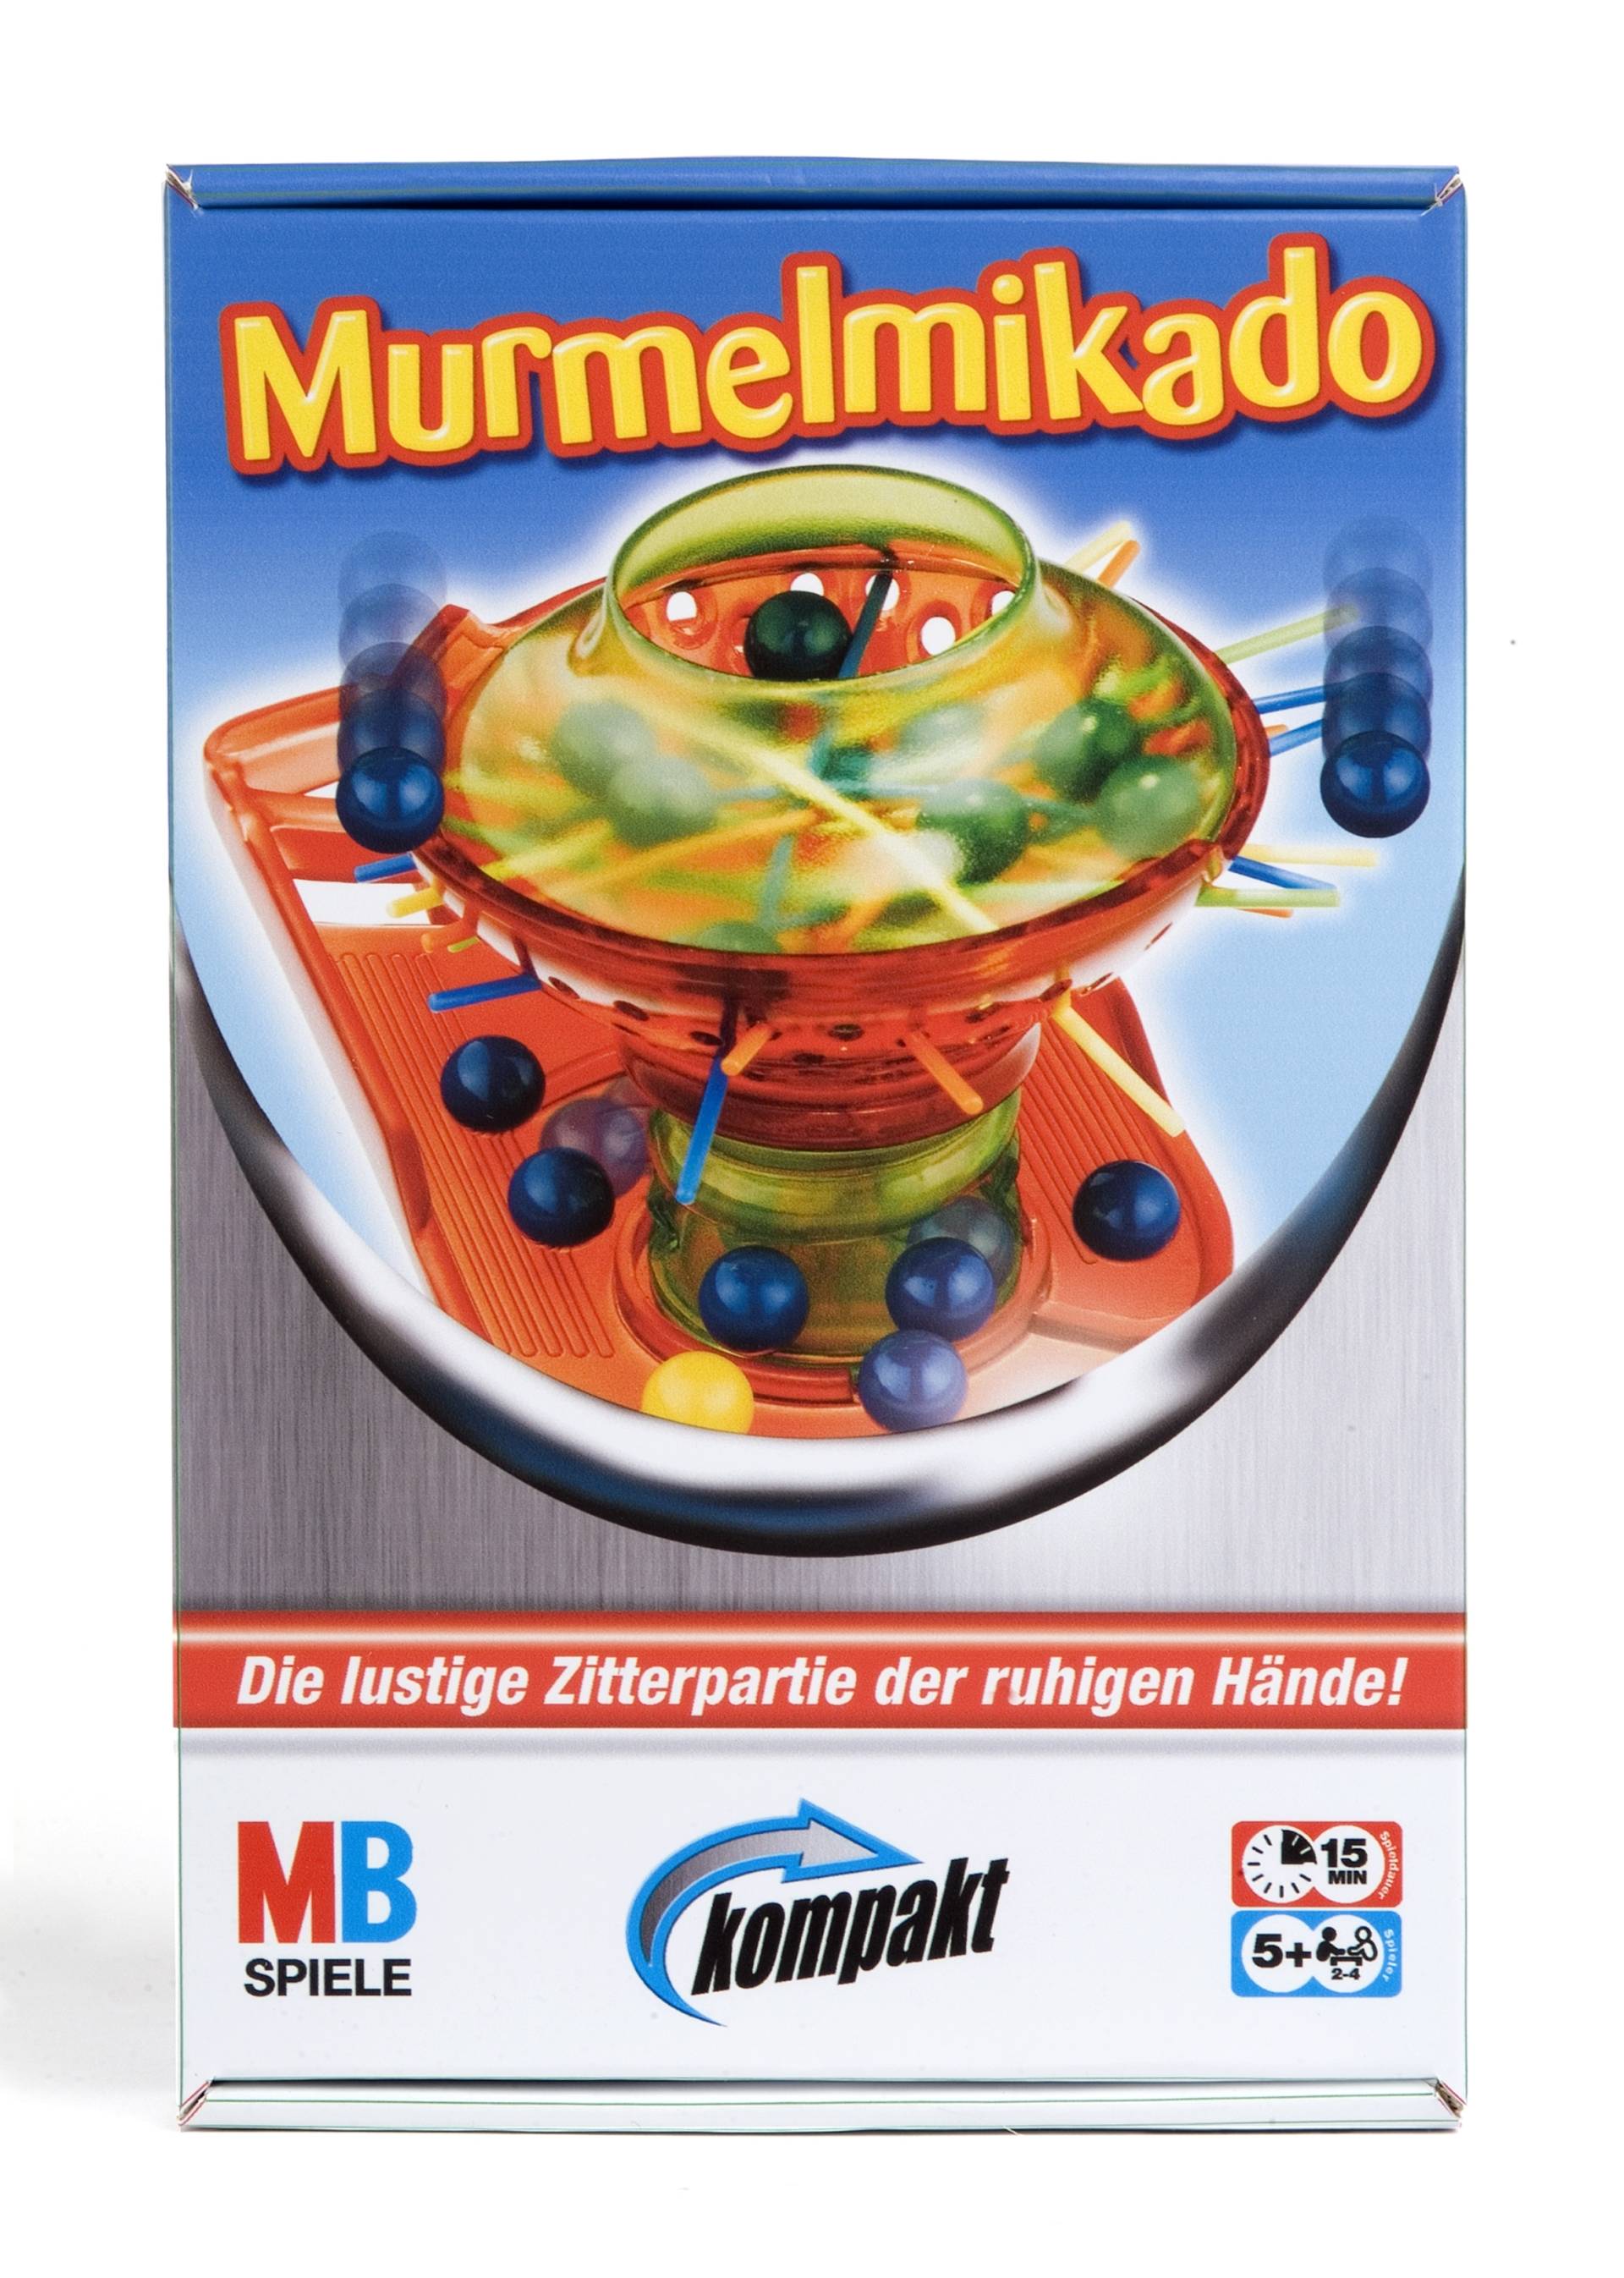 Murmelmikado kompakt von Hasbro